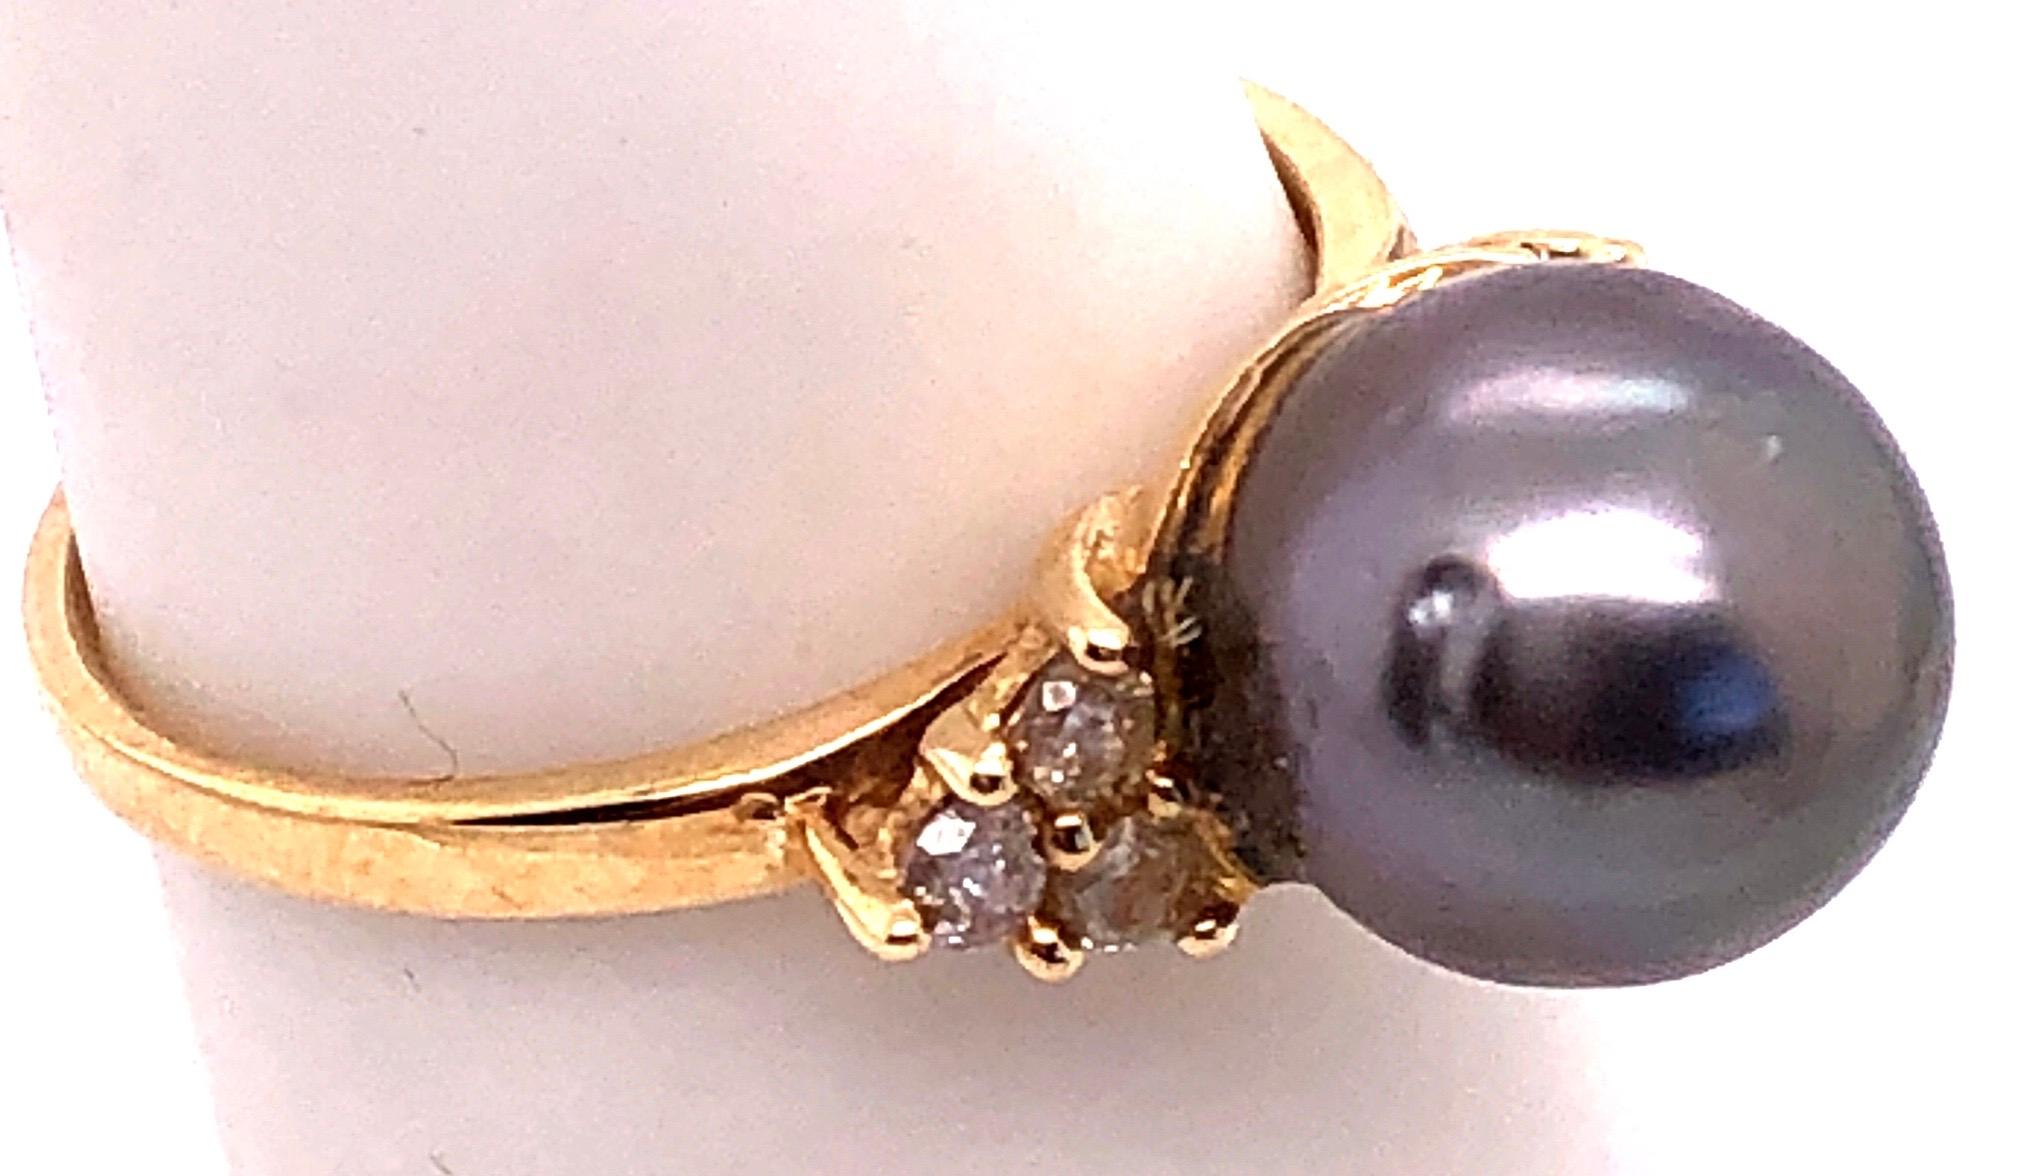 14 Karat Yellow Gold Ring Black Pearl Solitaire With Diamond Accents Size 7.
Perle de 9 mm de diamètre
0,18 poids total de diamant
Poids total : 3,4 grammes.